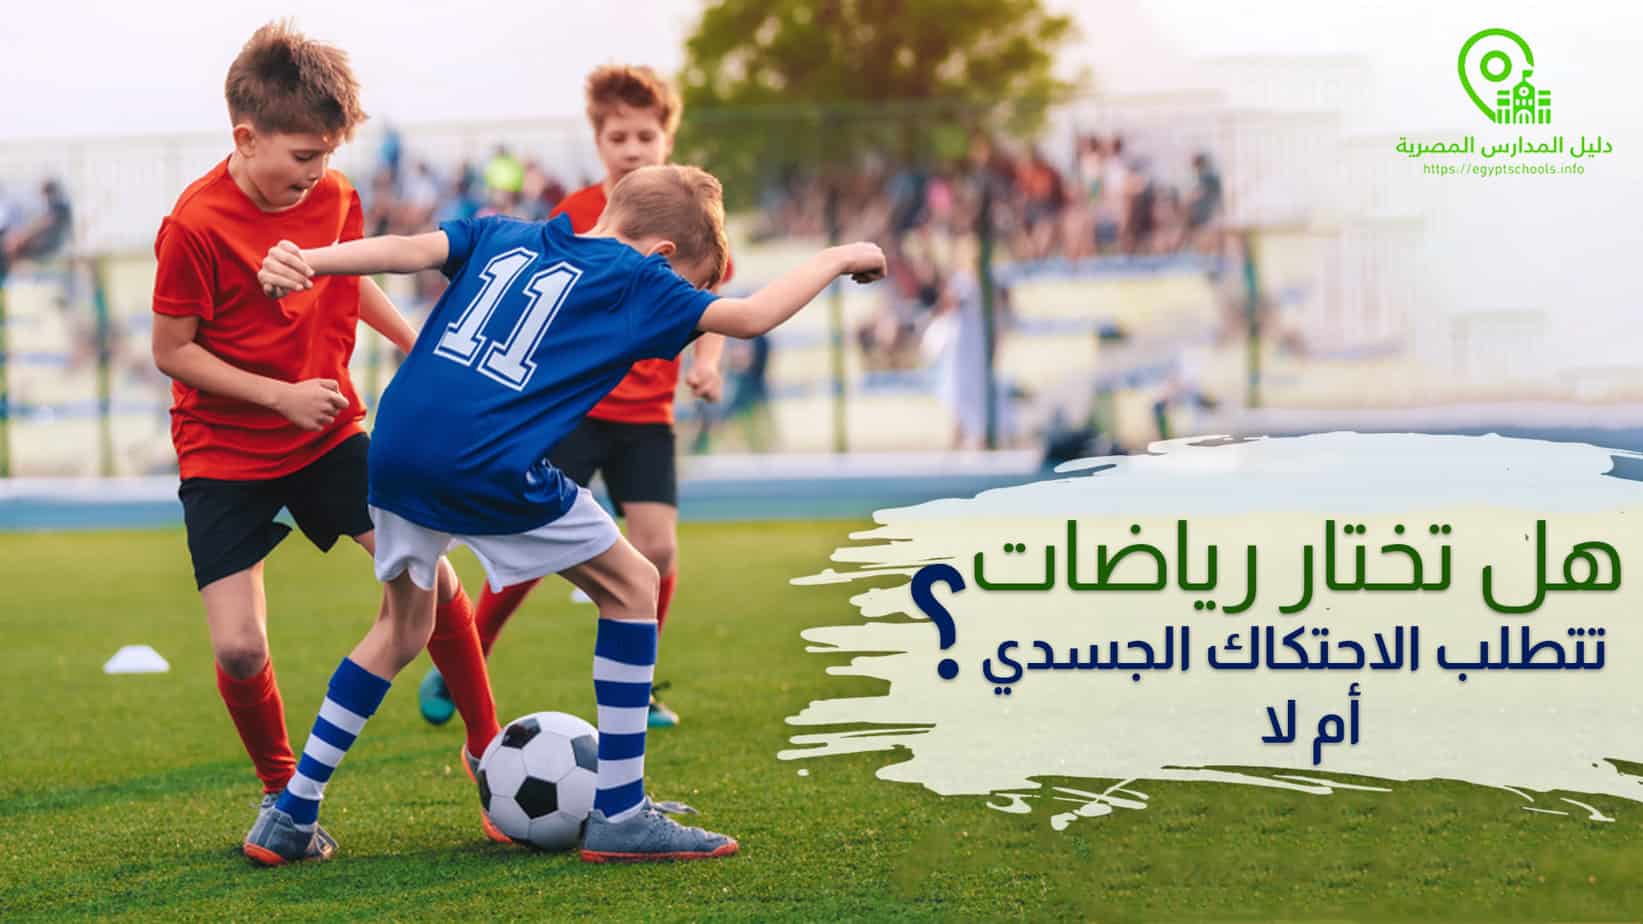 هل تختار رياضات تتطلب الاحتكاك الجسدي أم لا؟ contact or non contact sports